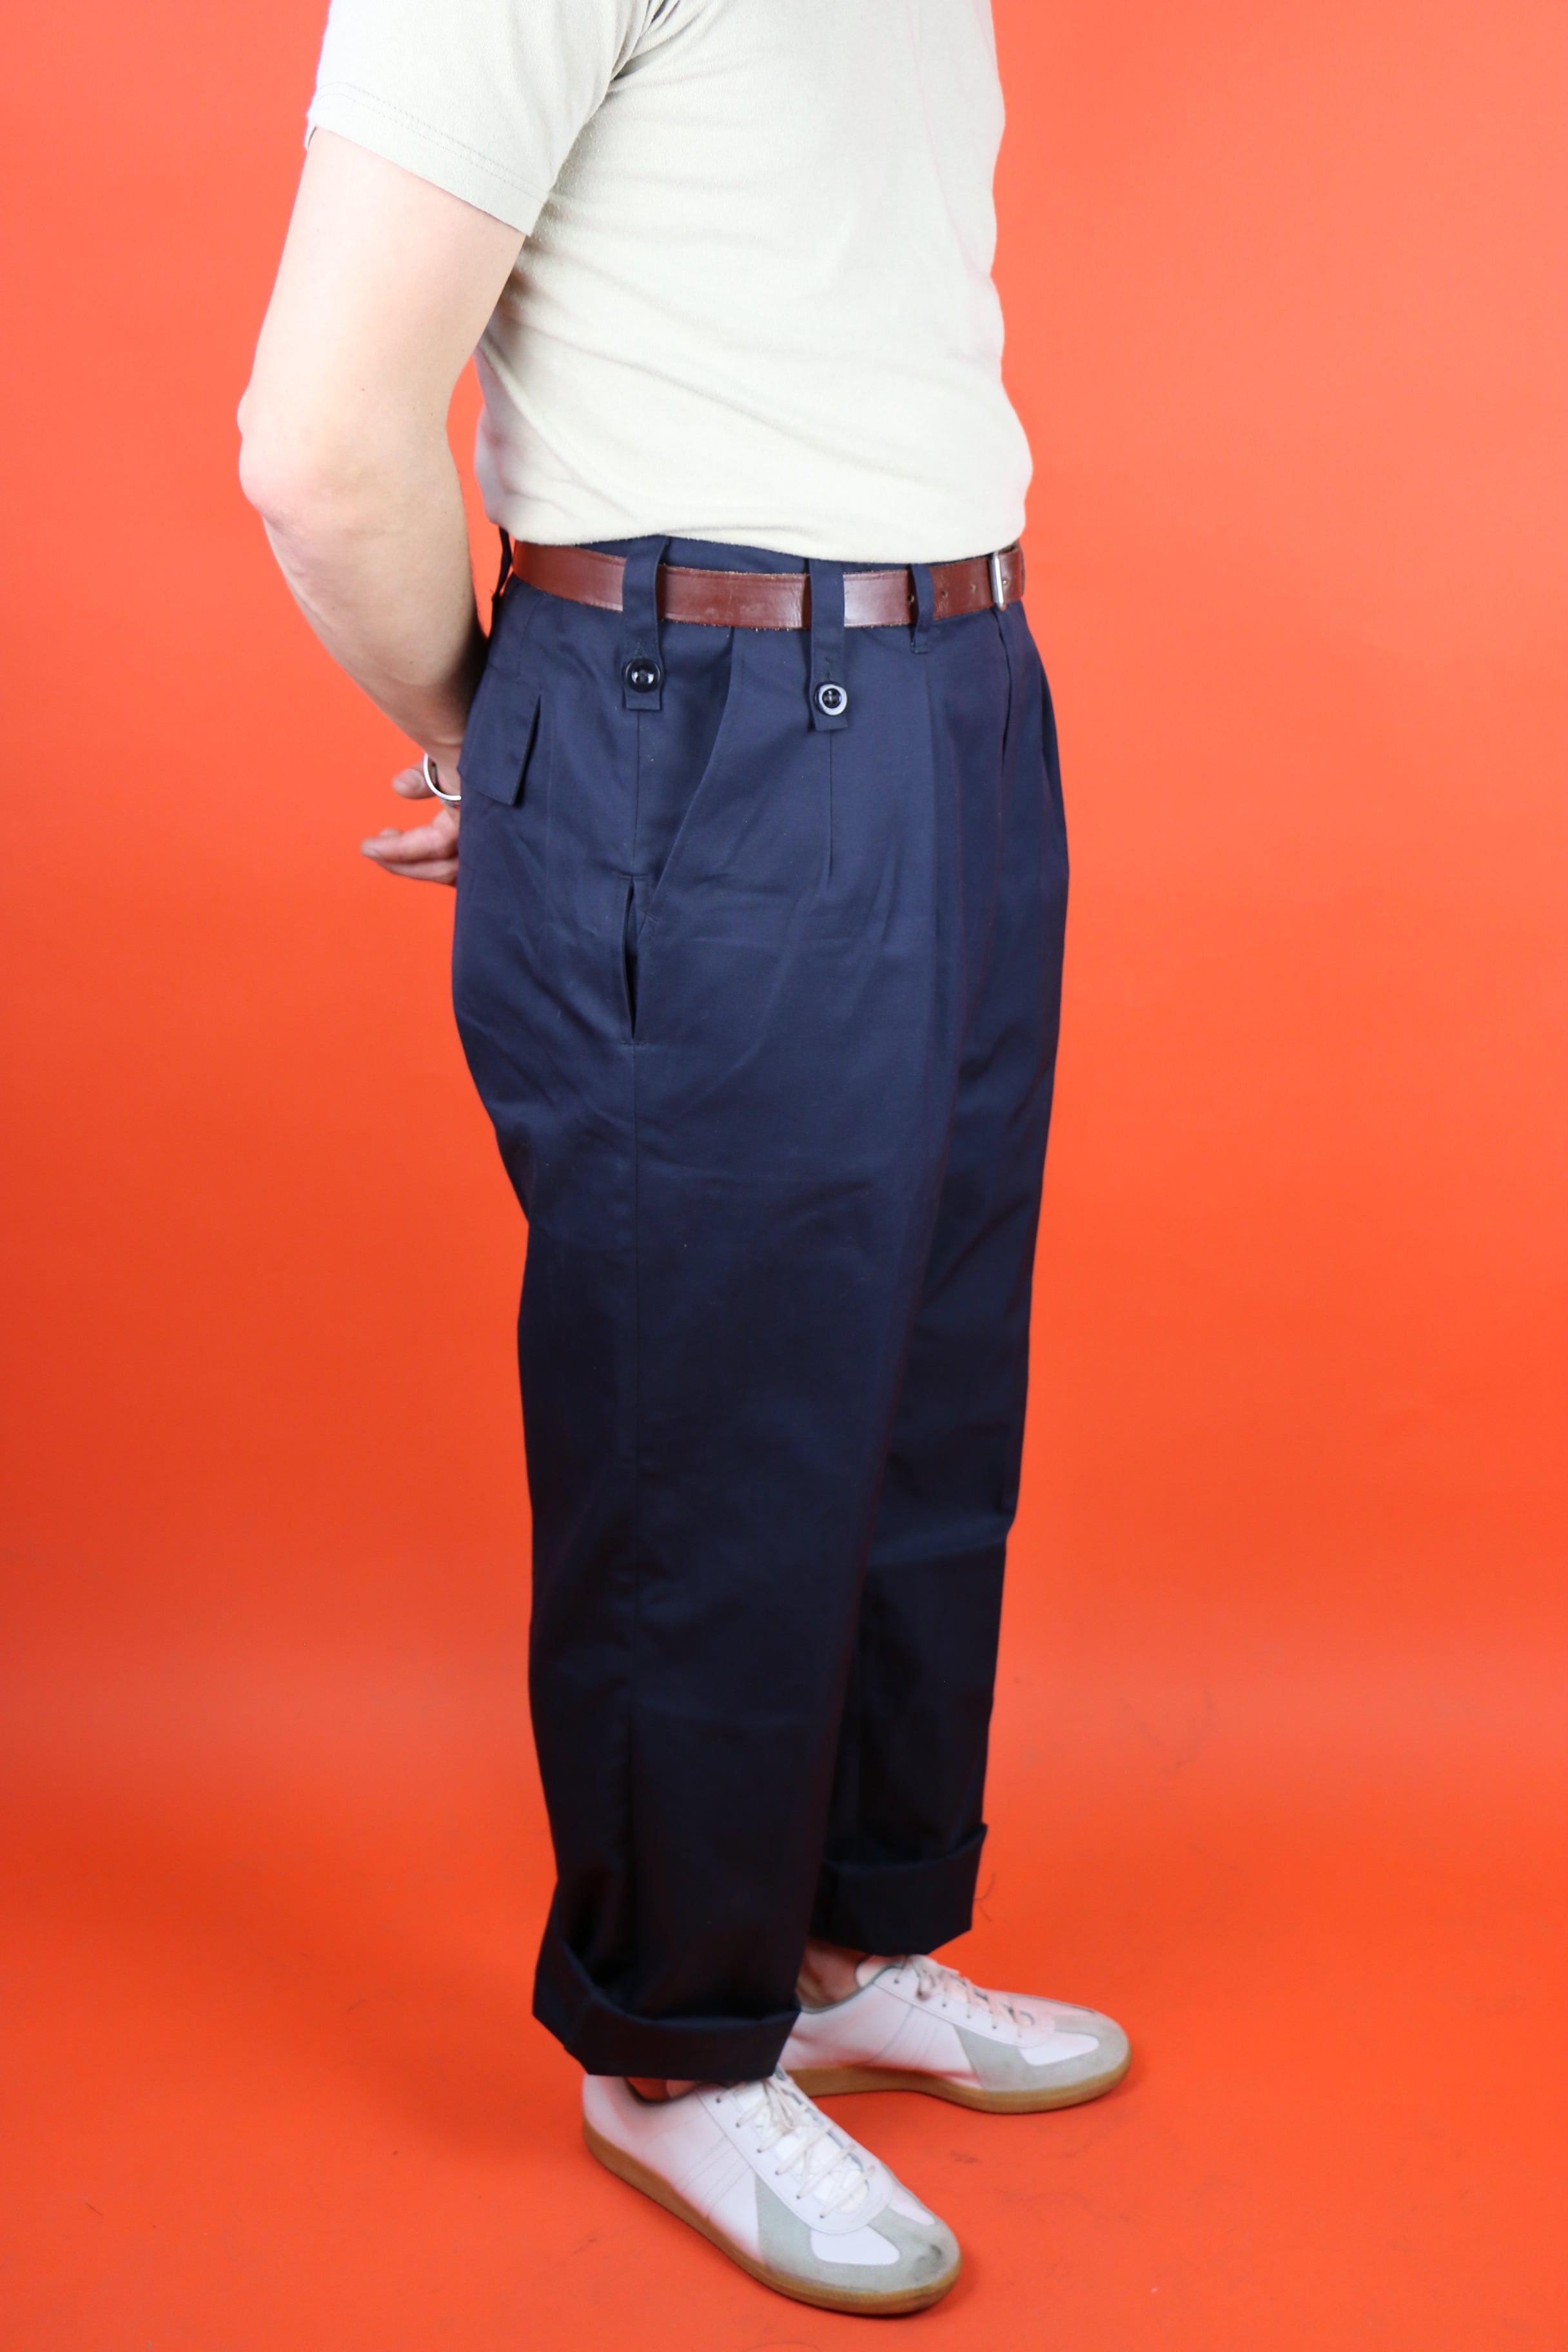 Vintage Pants for Men ~ Clochard92.com